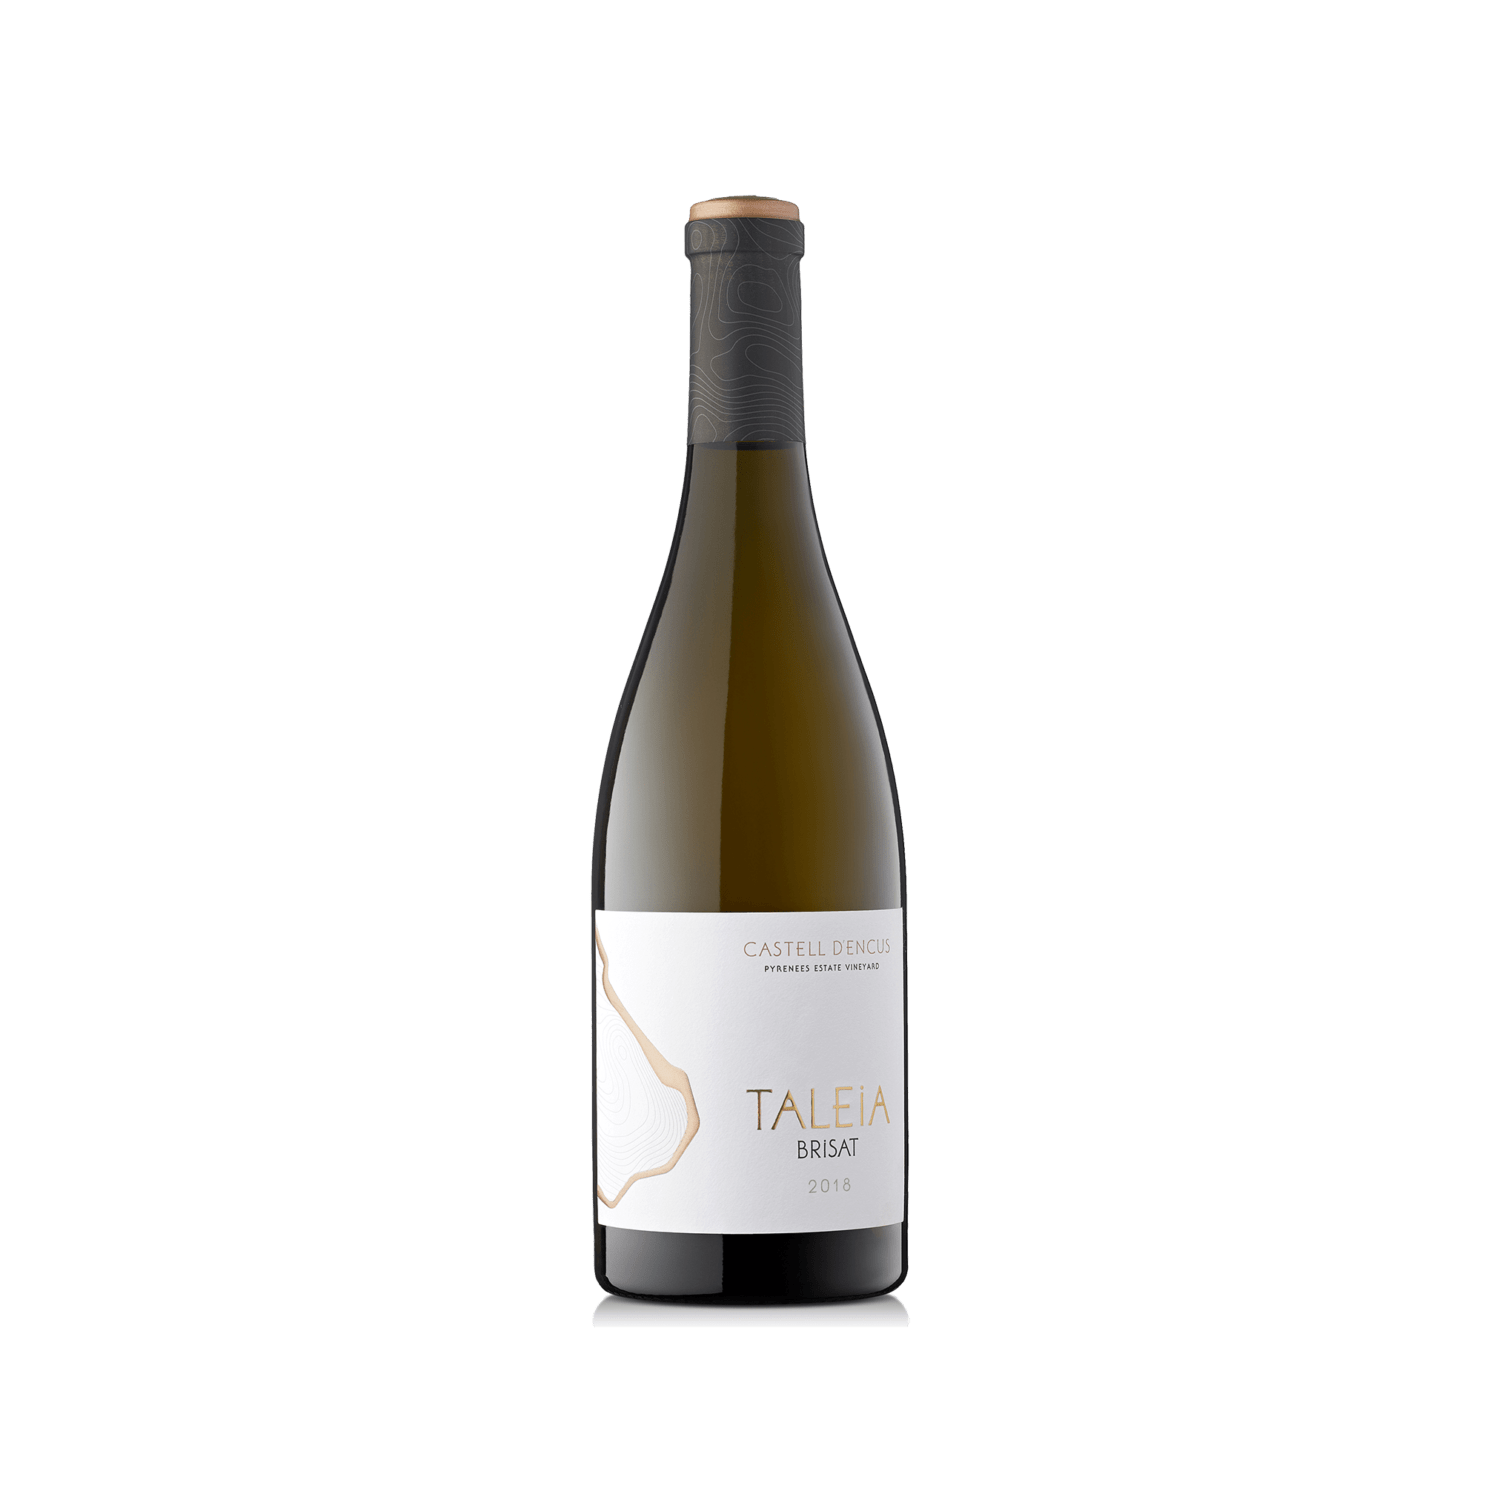 Wine study bottle of TALEIA BRISAT 2018